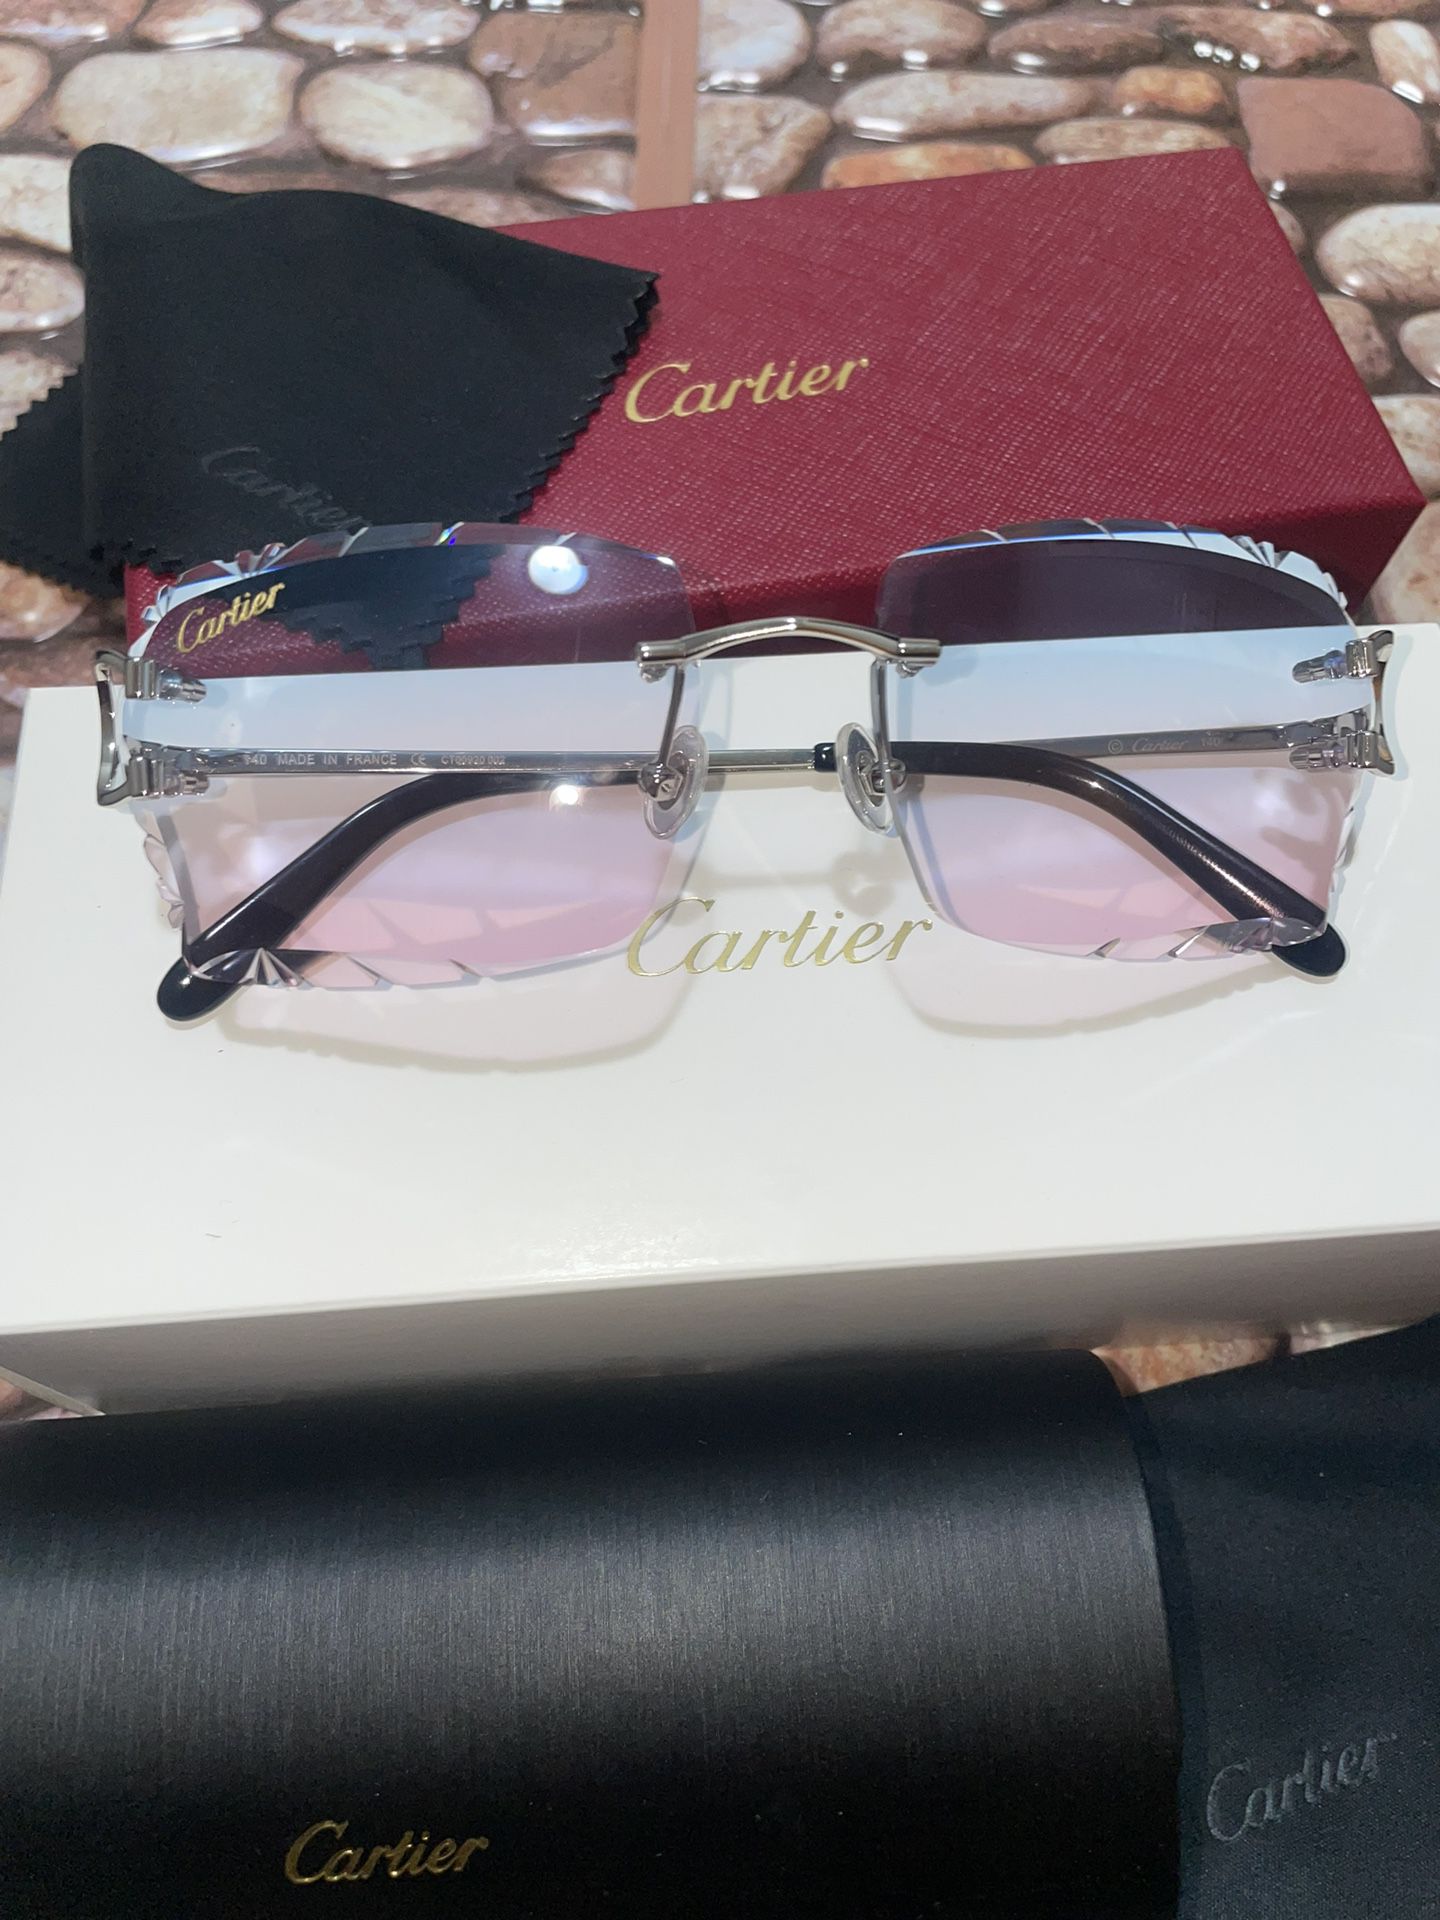 Cartier C Decor “Miami” Sunglasses - “Wires”